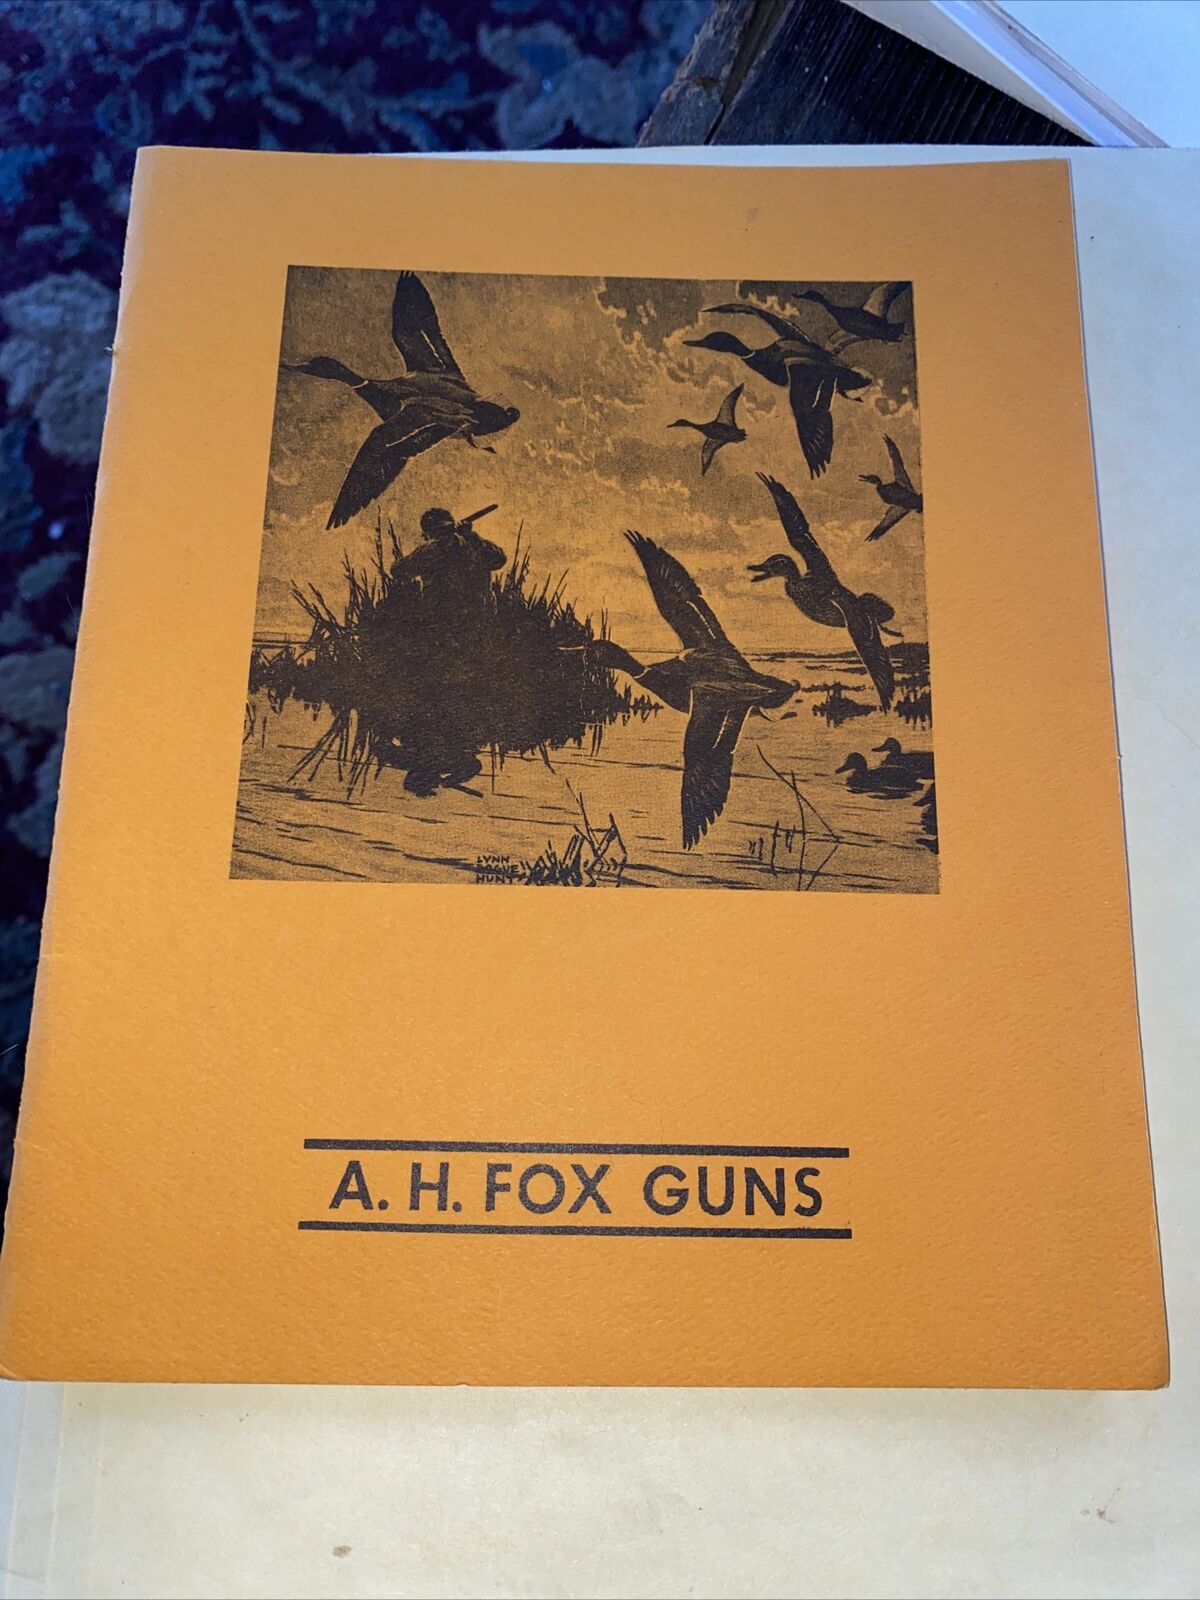 AH Fox Max 47% OFF Popular products Reprint Gun Catalog